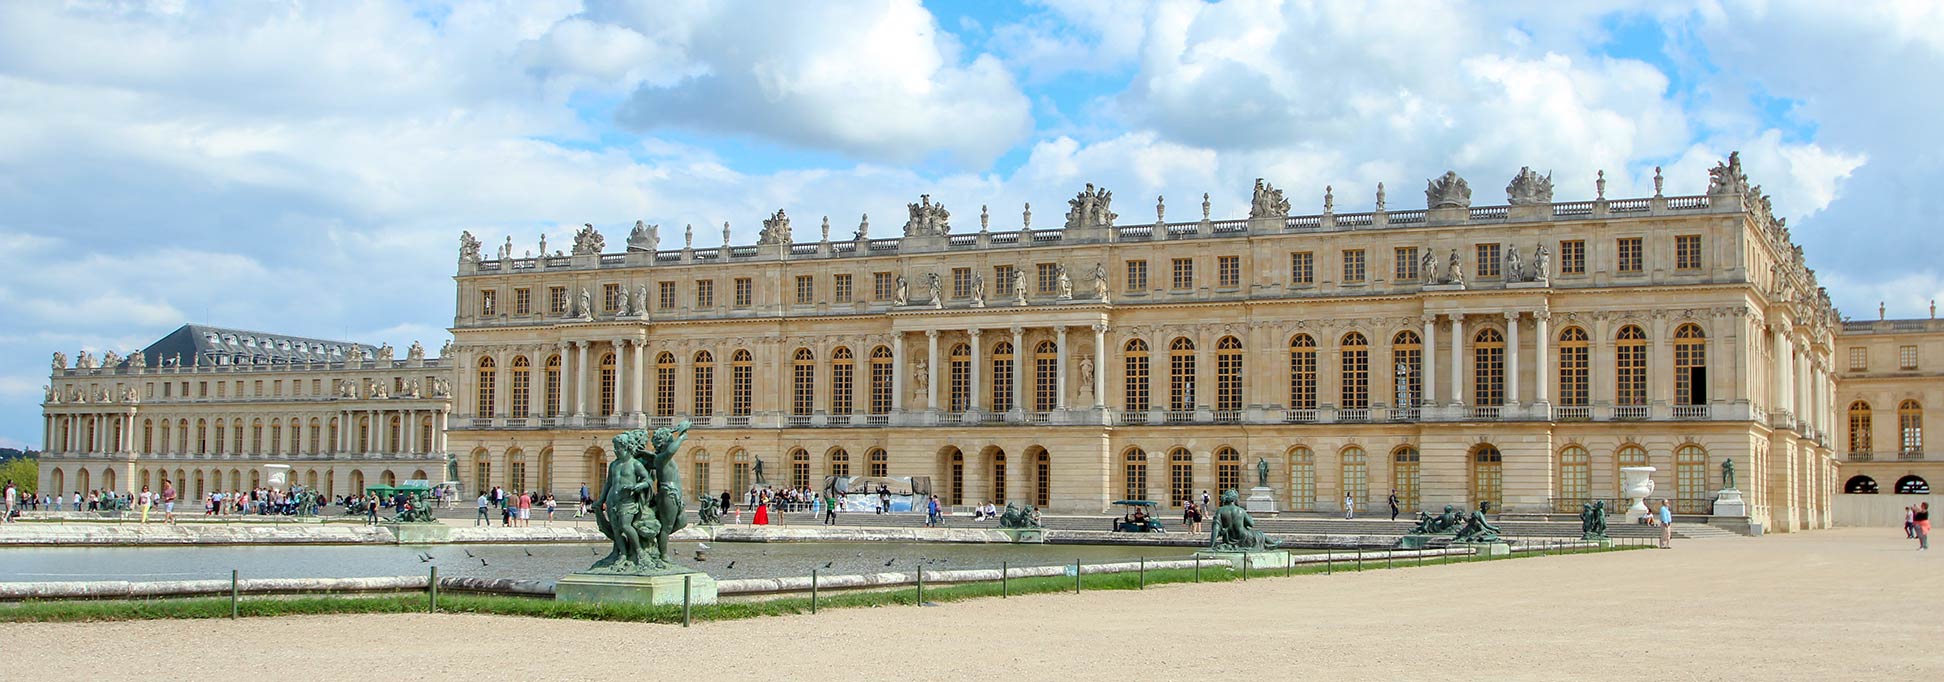 Garden facade of the Palace of Versailles with Basin du Midi